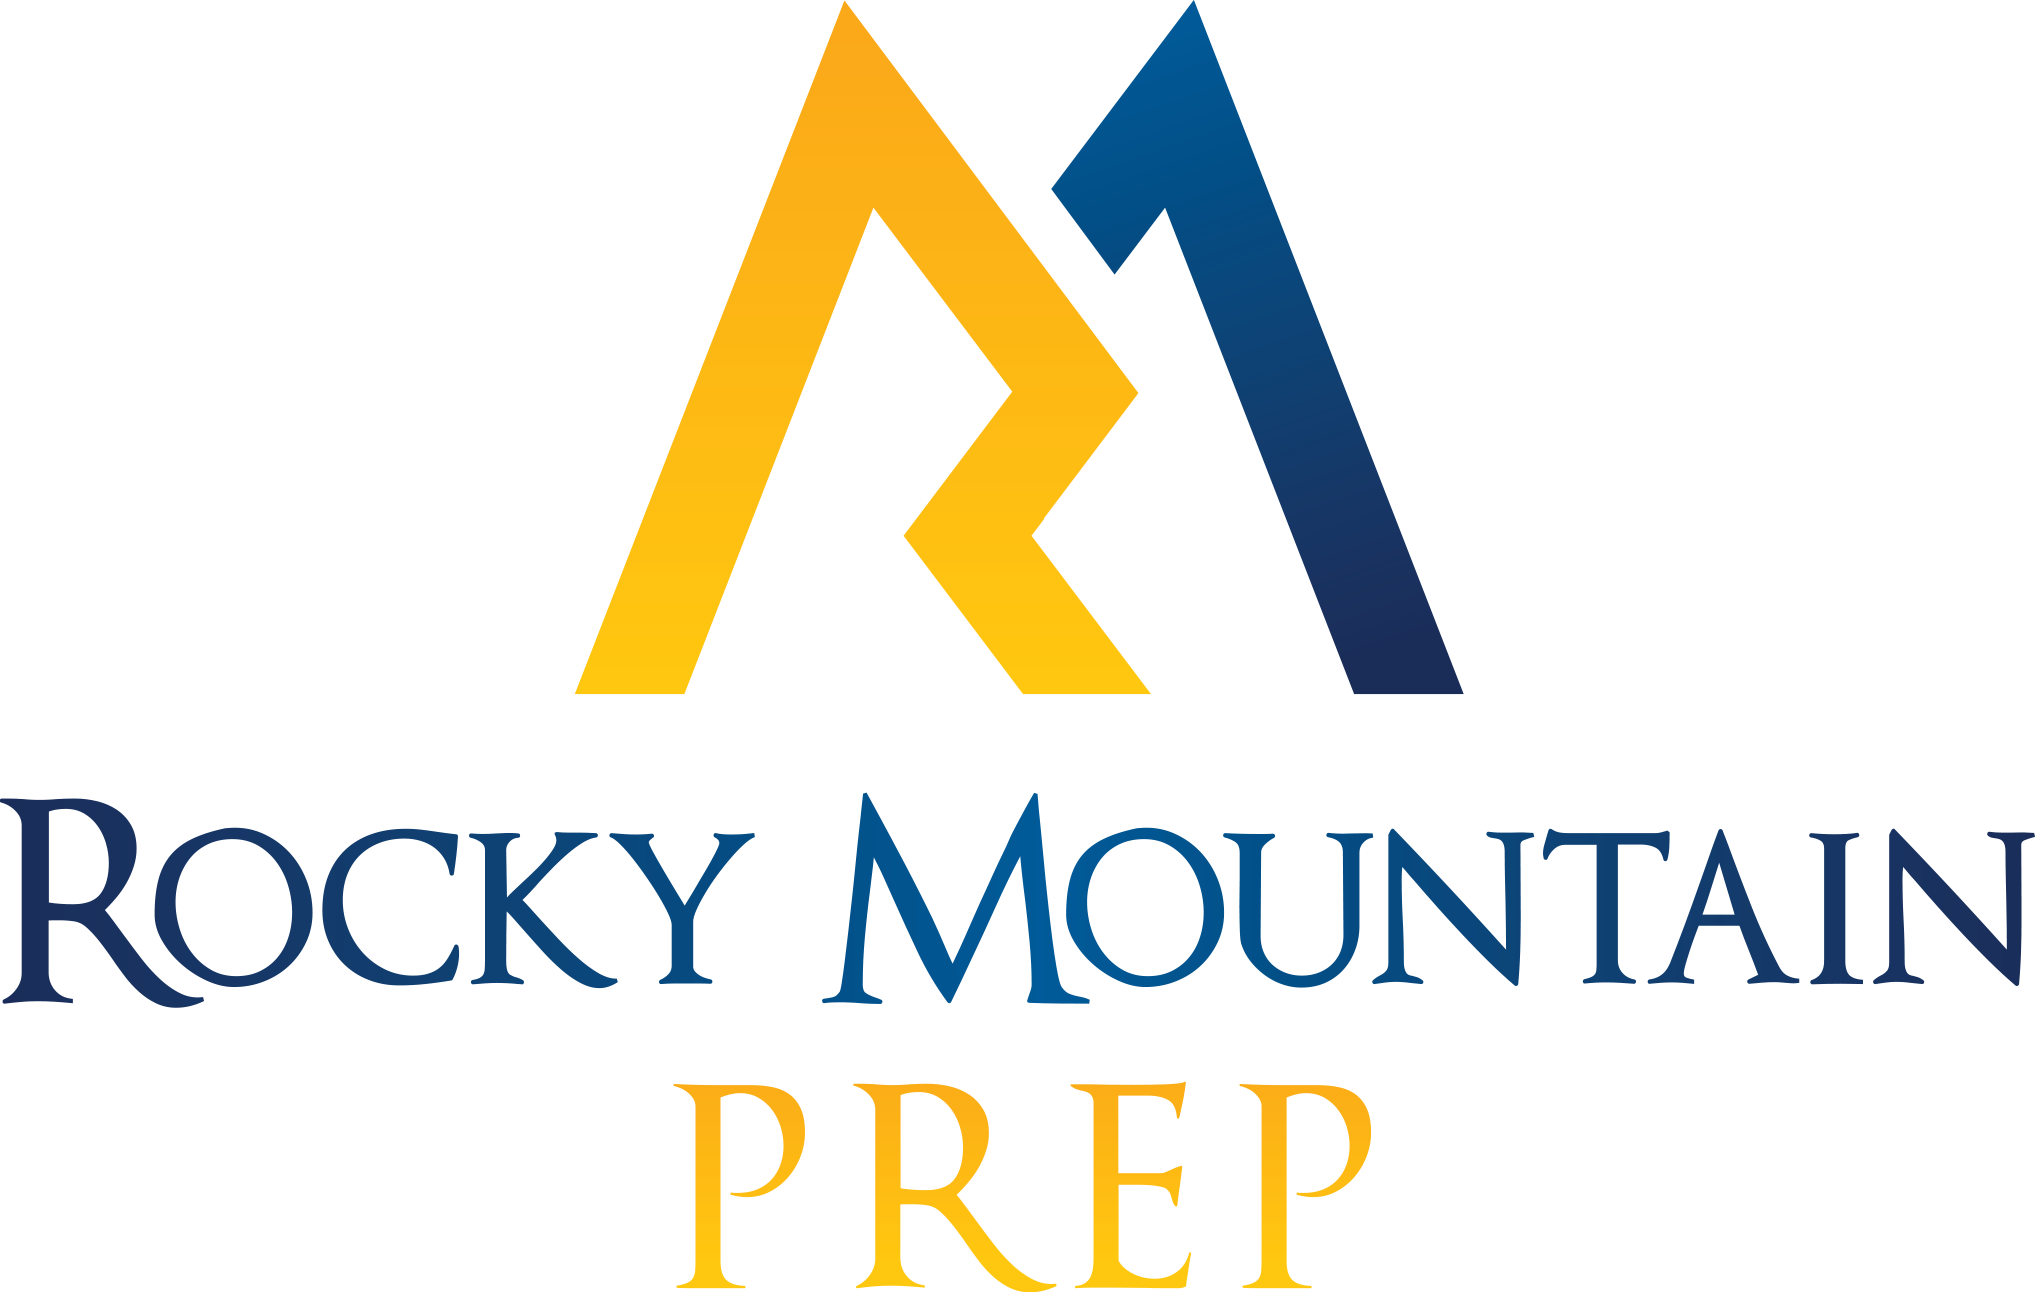 Rocky Mountain Prep logo